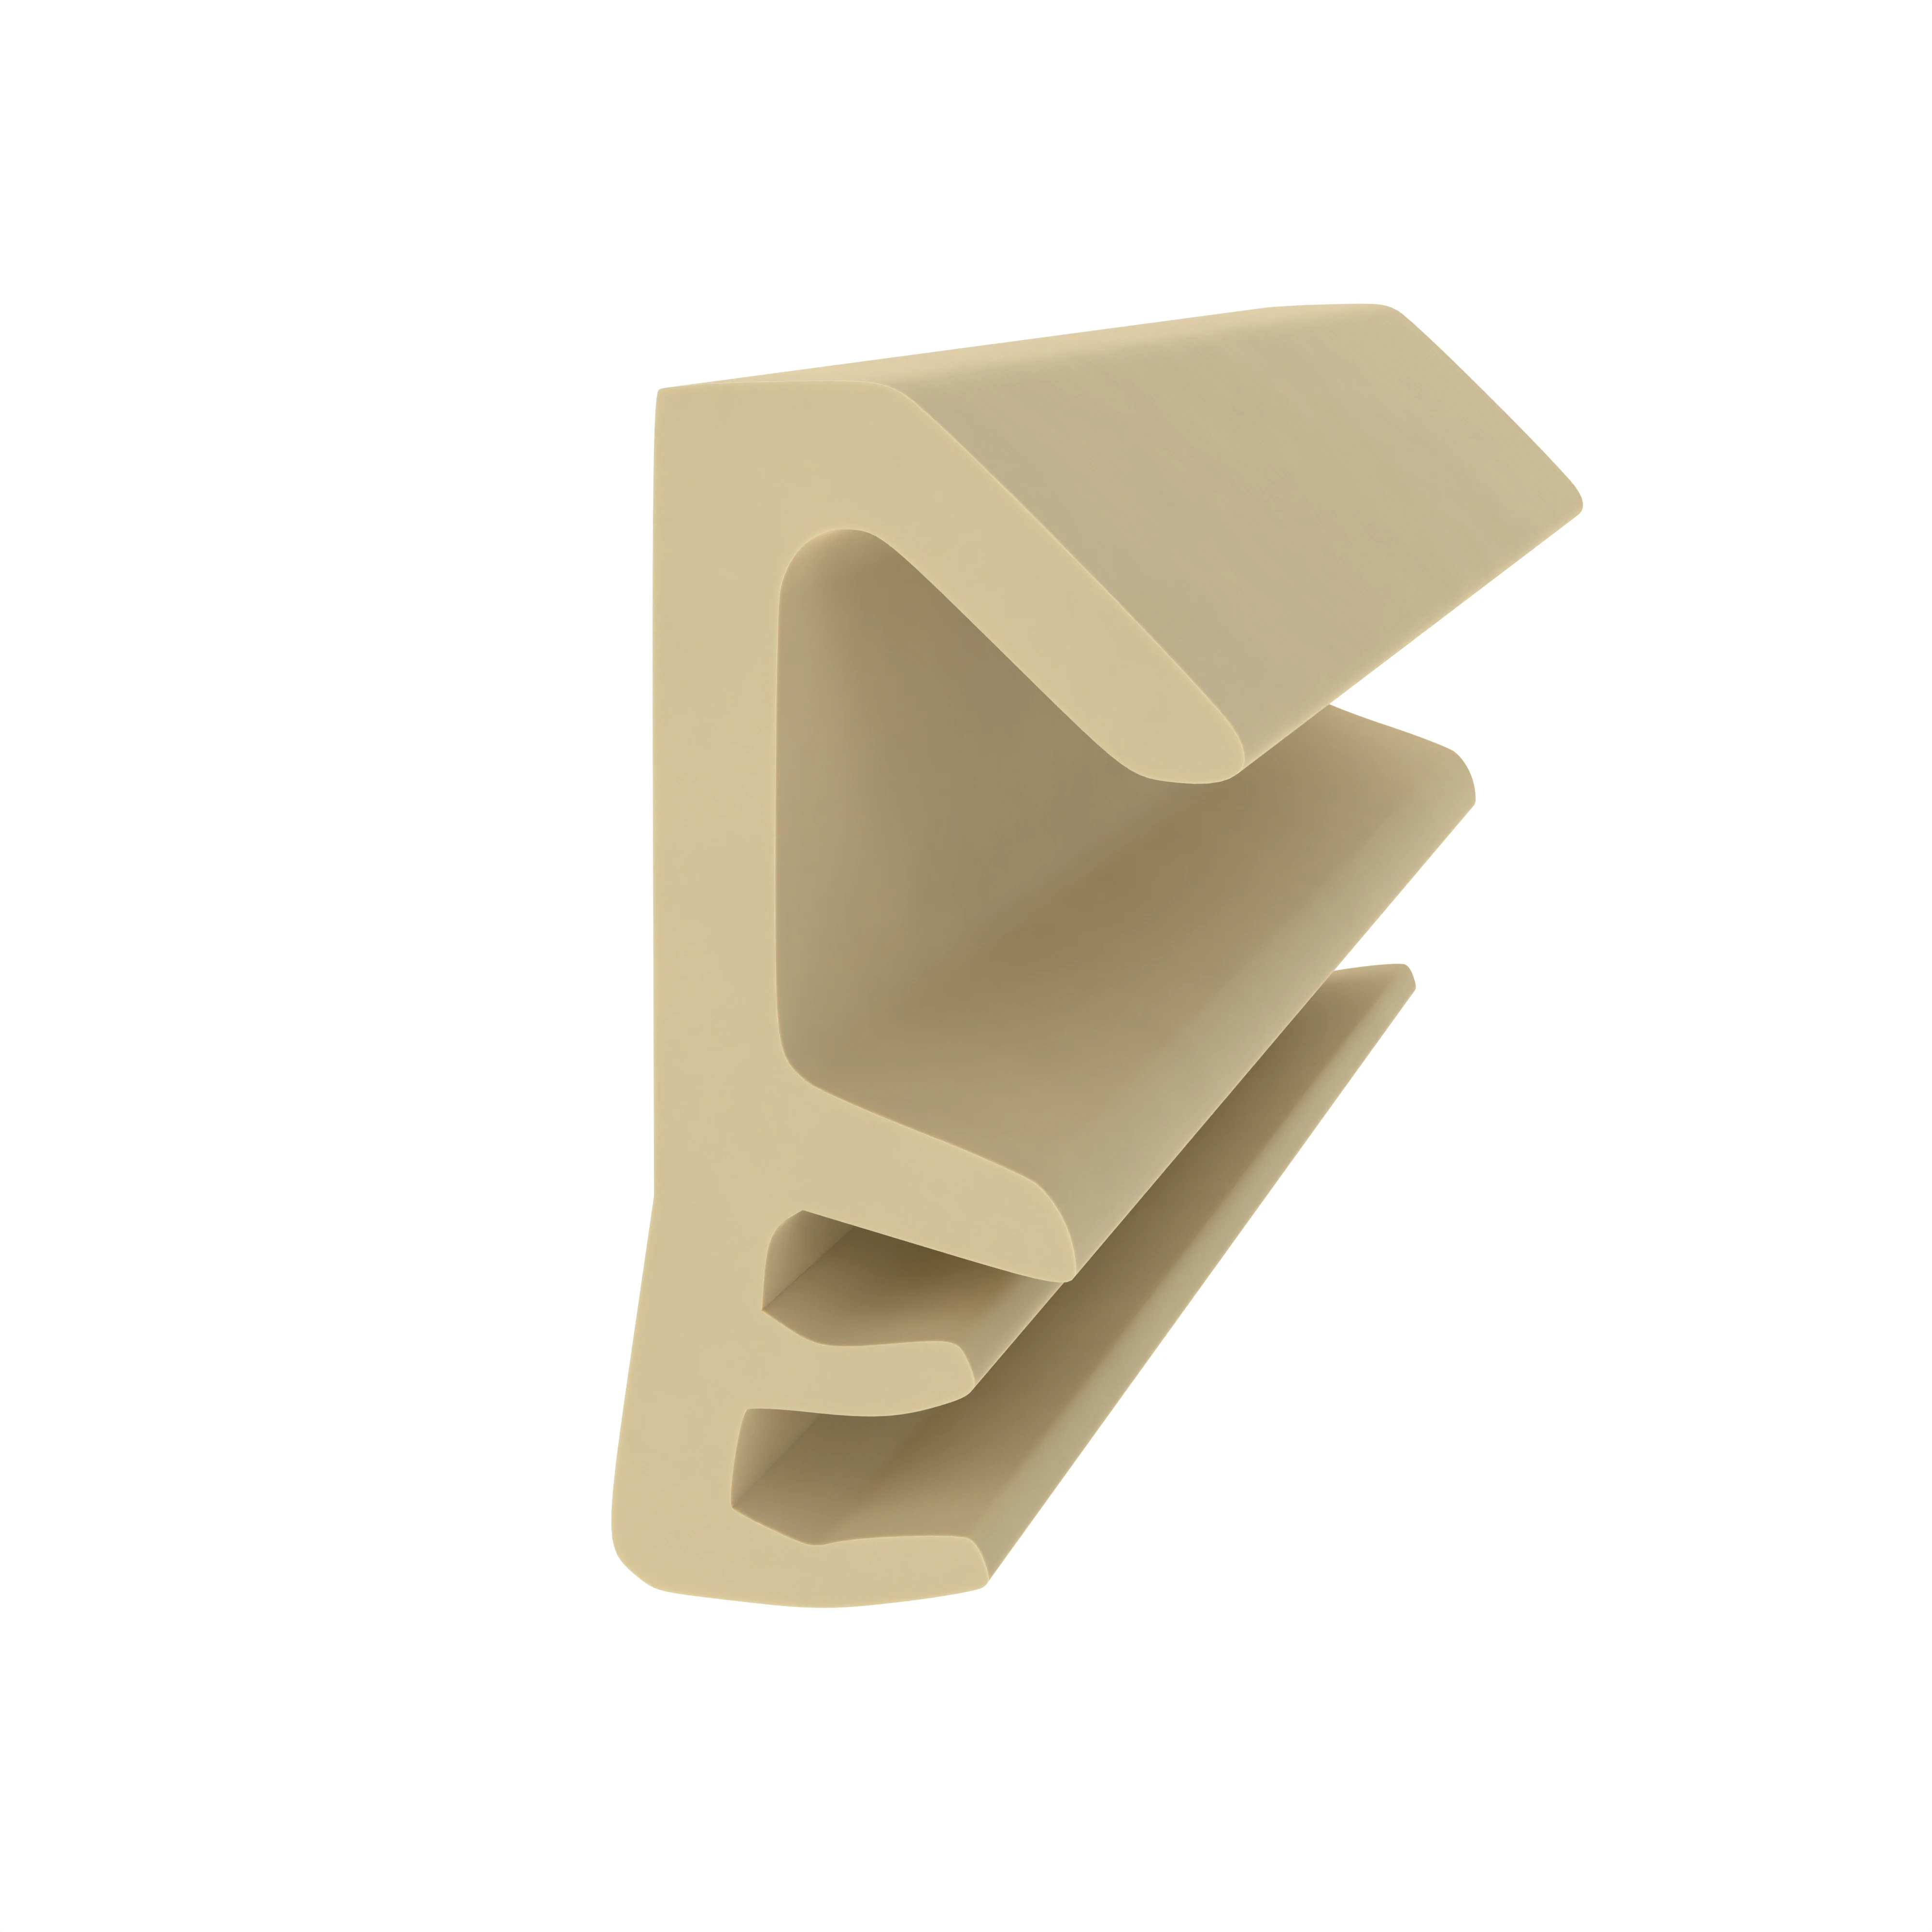 Flügelfalzdichtung für Holzelemente | 12 mm Falzhöhe | Farbe: beige